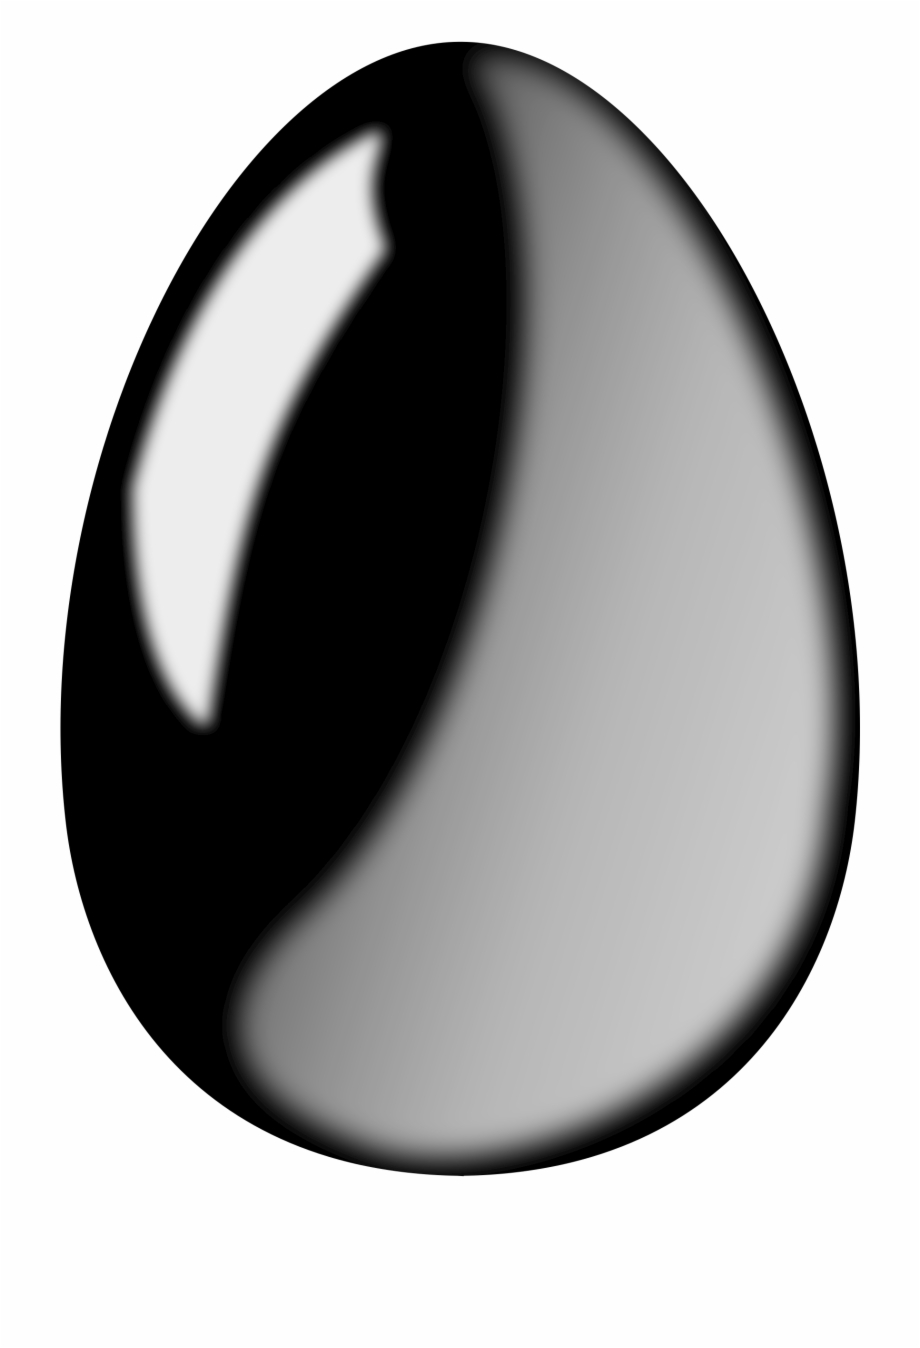 Black Egg Black Egg Clipart